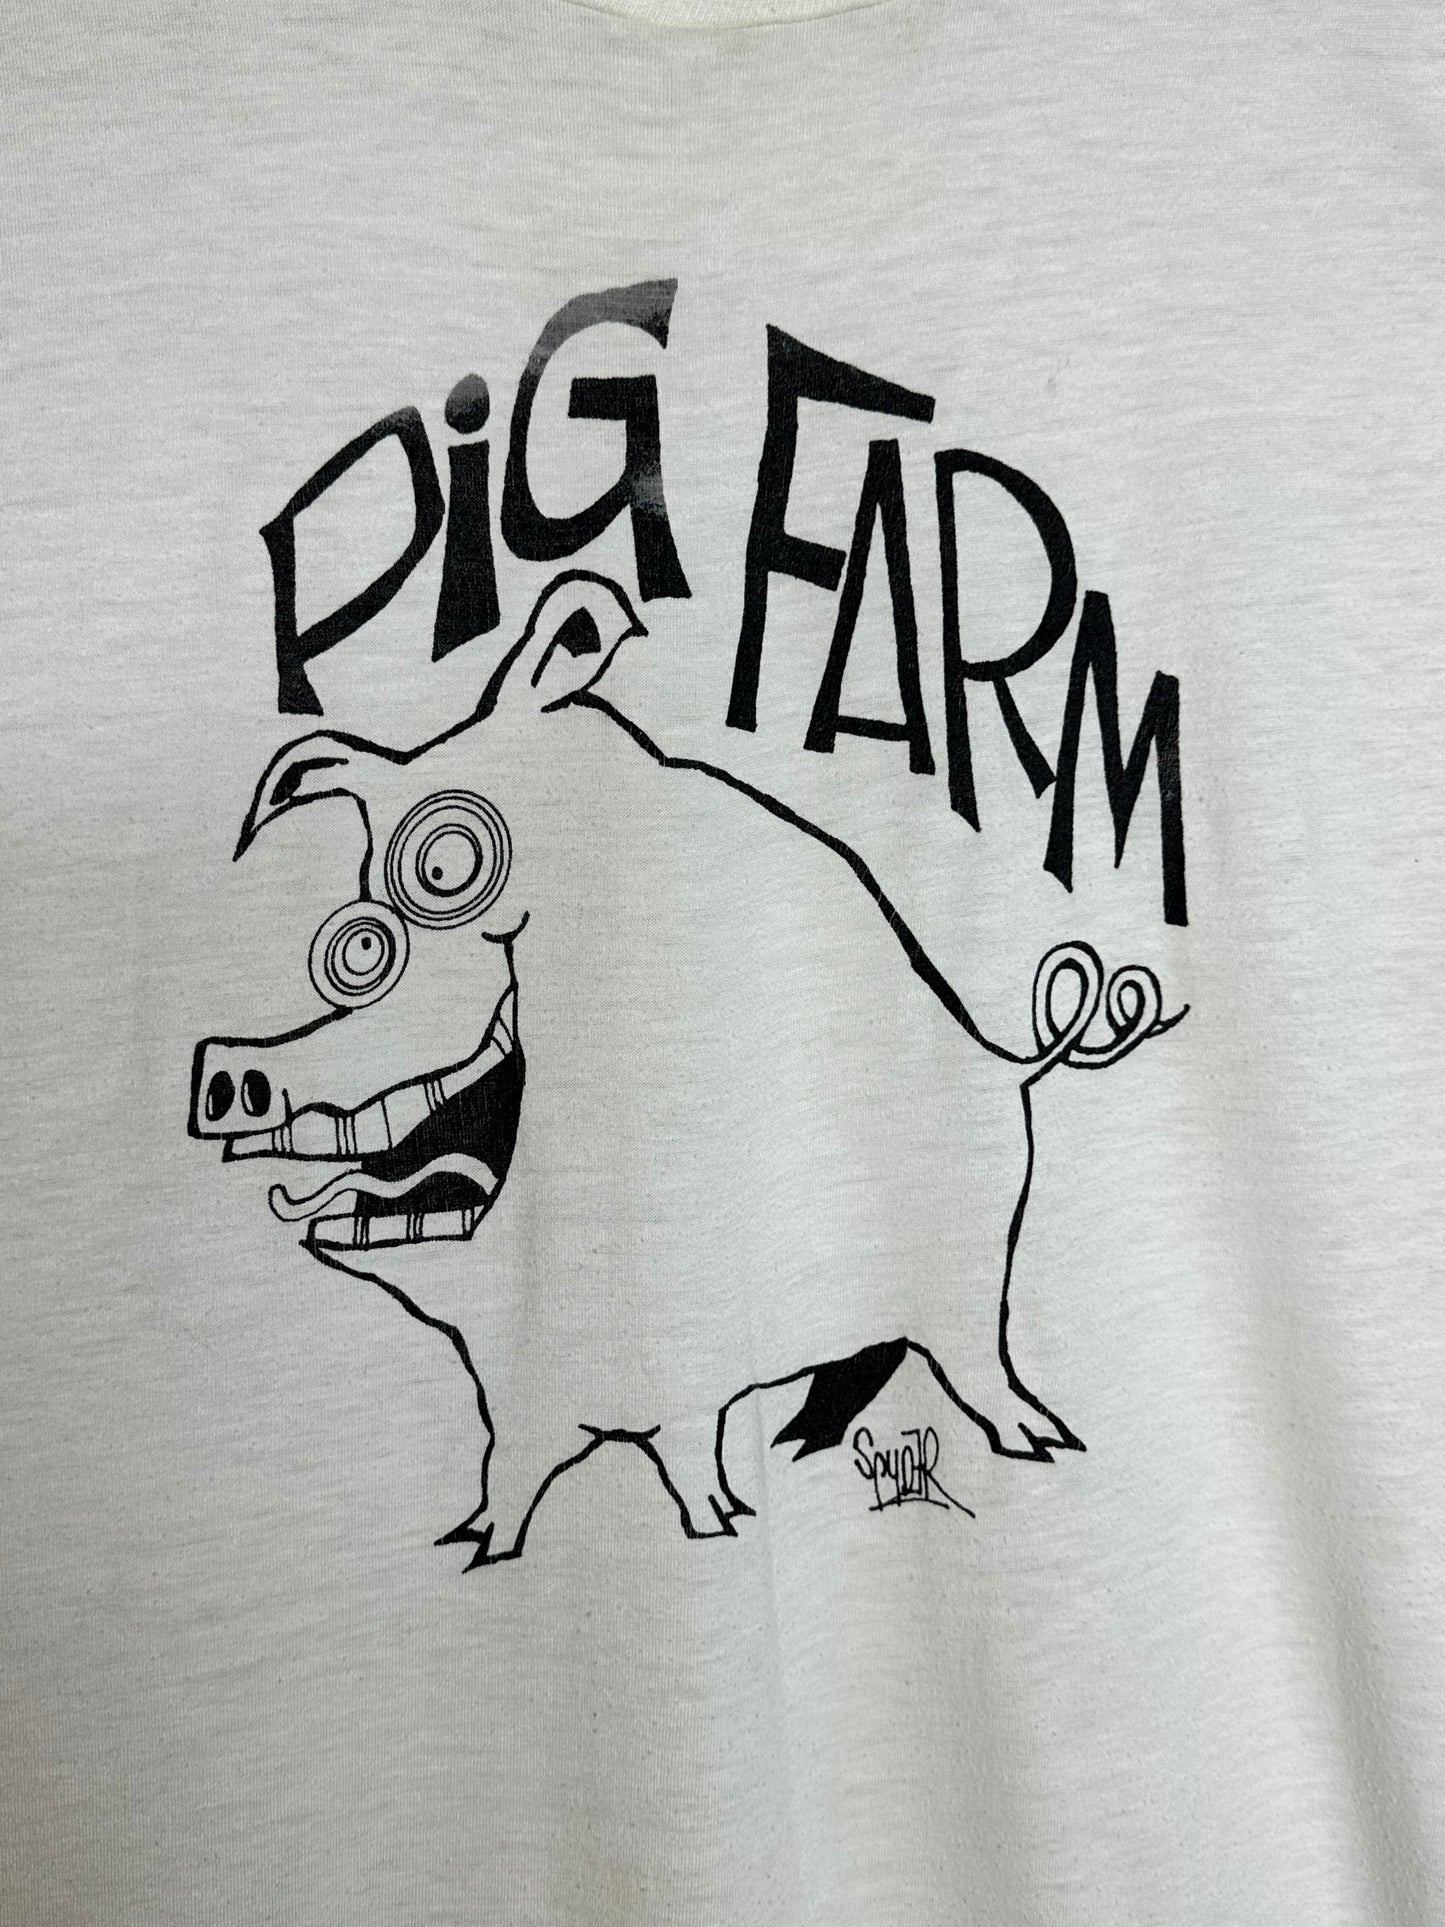 Vintage 80’s Pig Farm t-shirt L